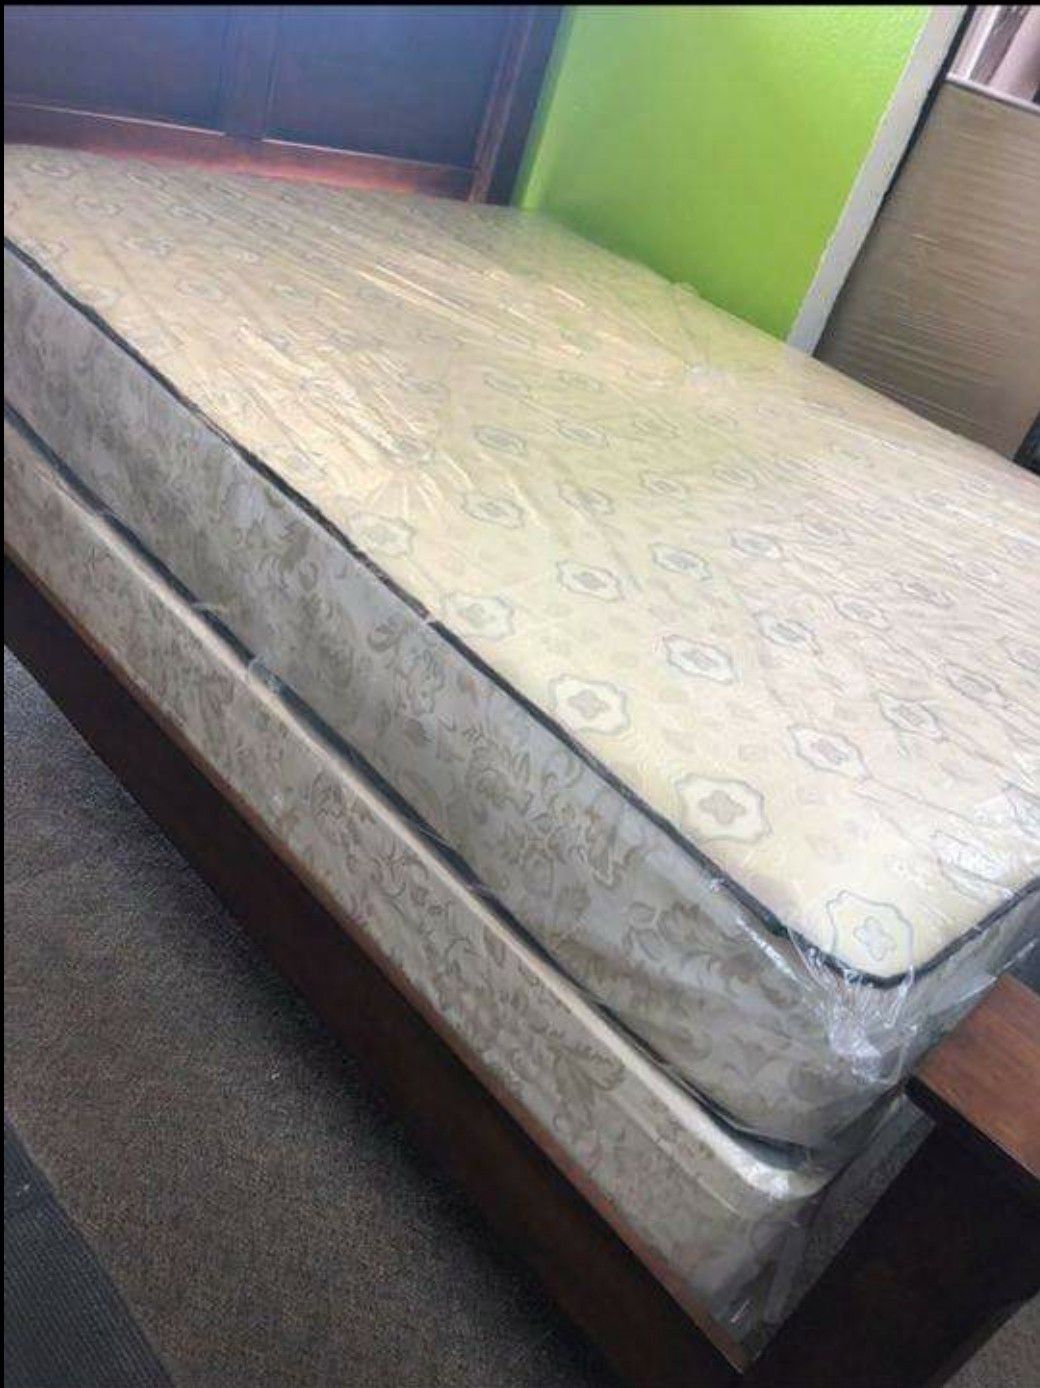 Queen mattress. Brand new